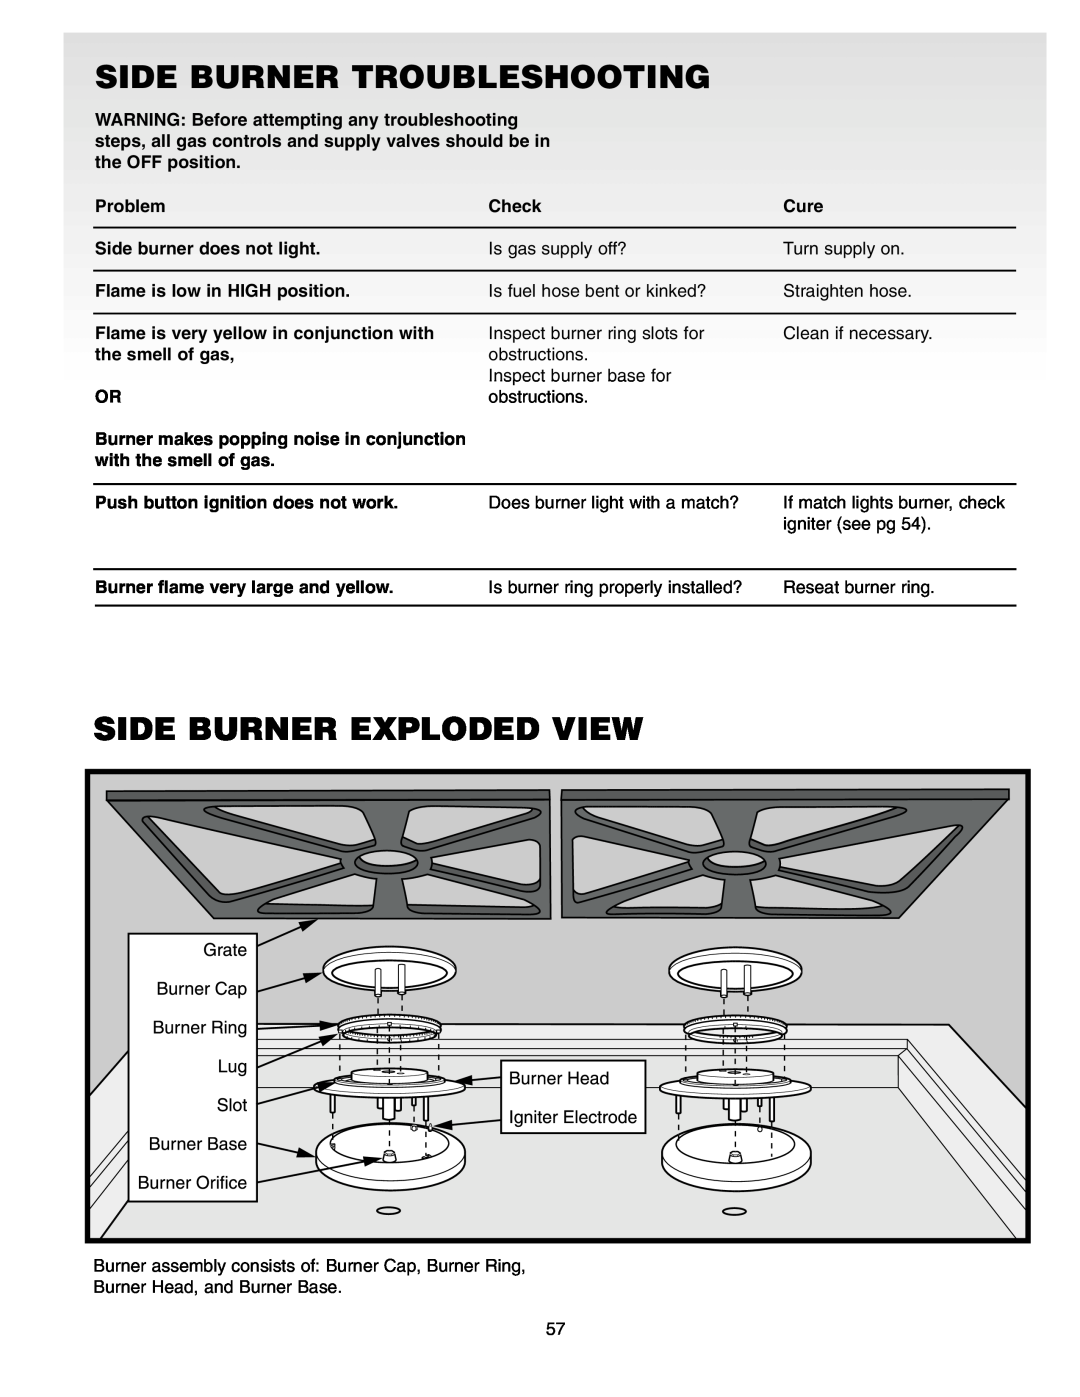 Weber Gas Burner manual Side Burner Troubleshooting, Side Burner Exploded View 